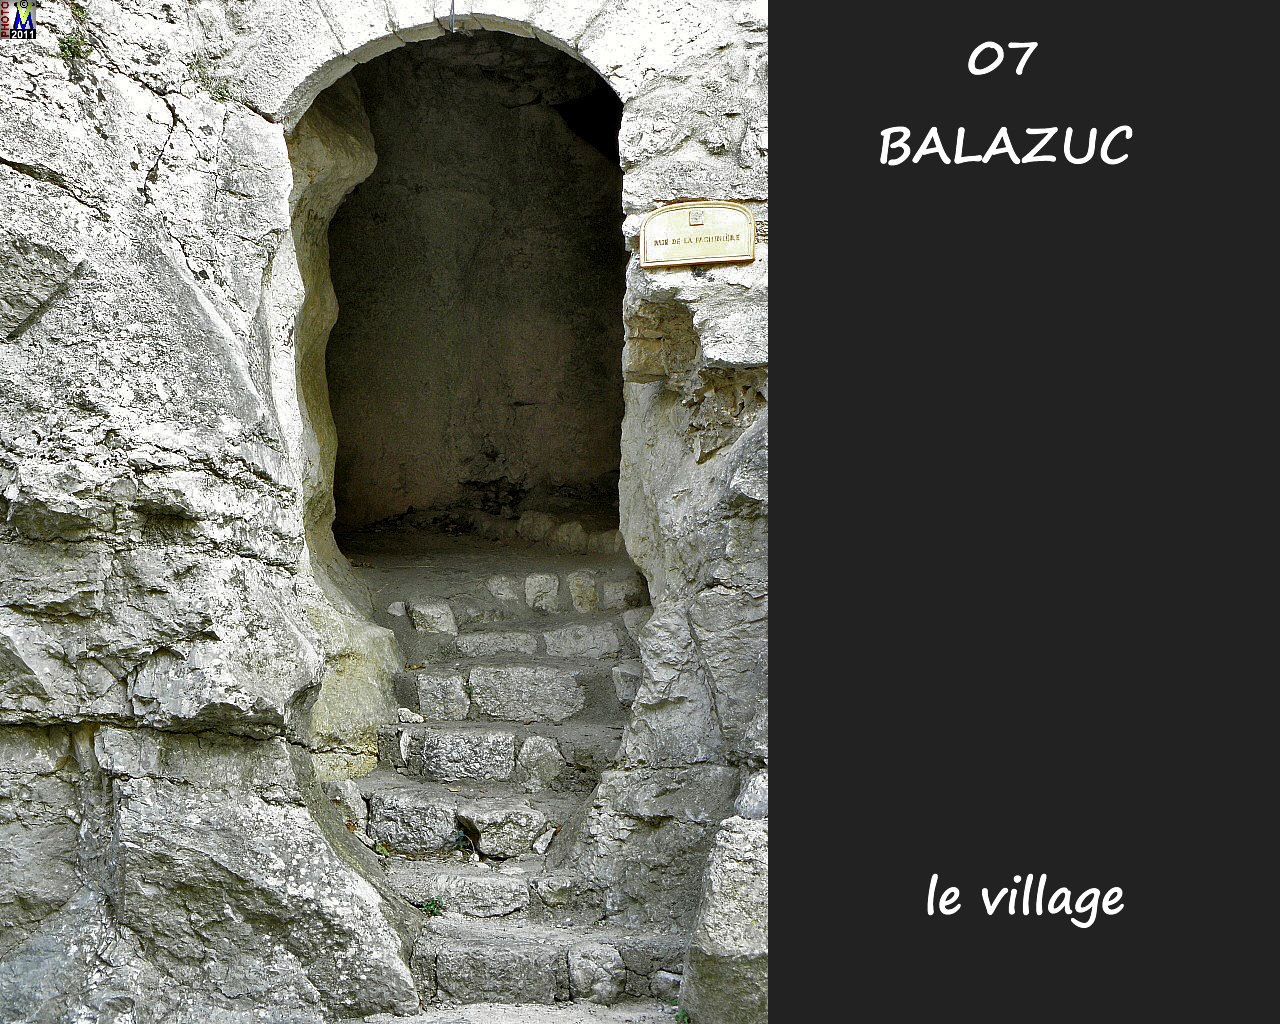 07BALAZUC_village_146.jpg